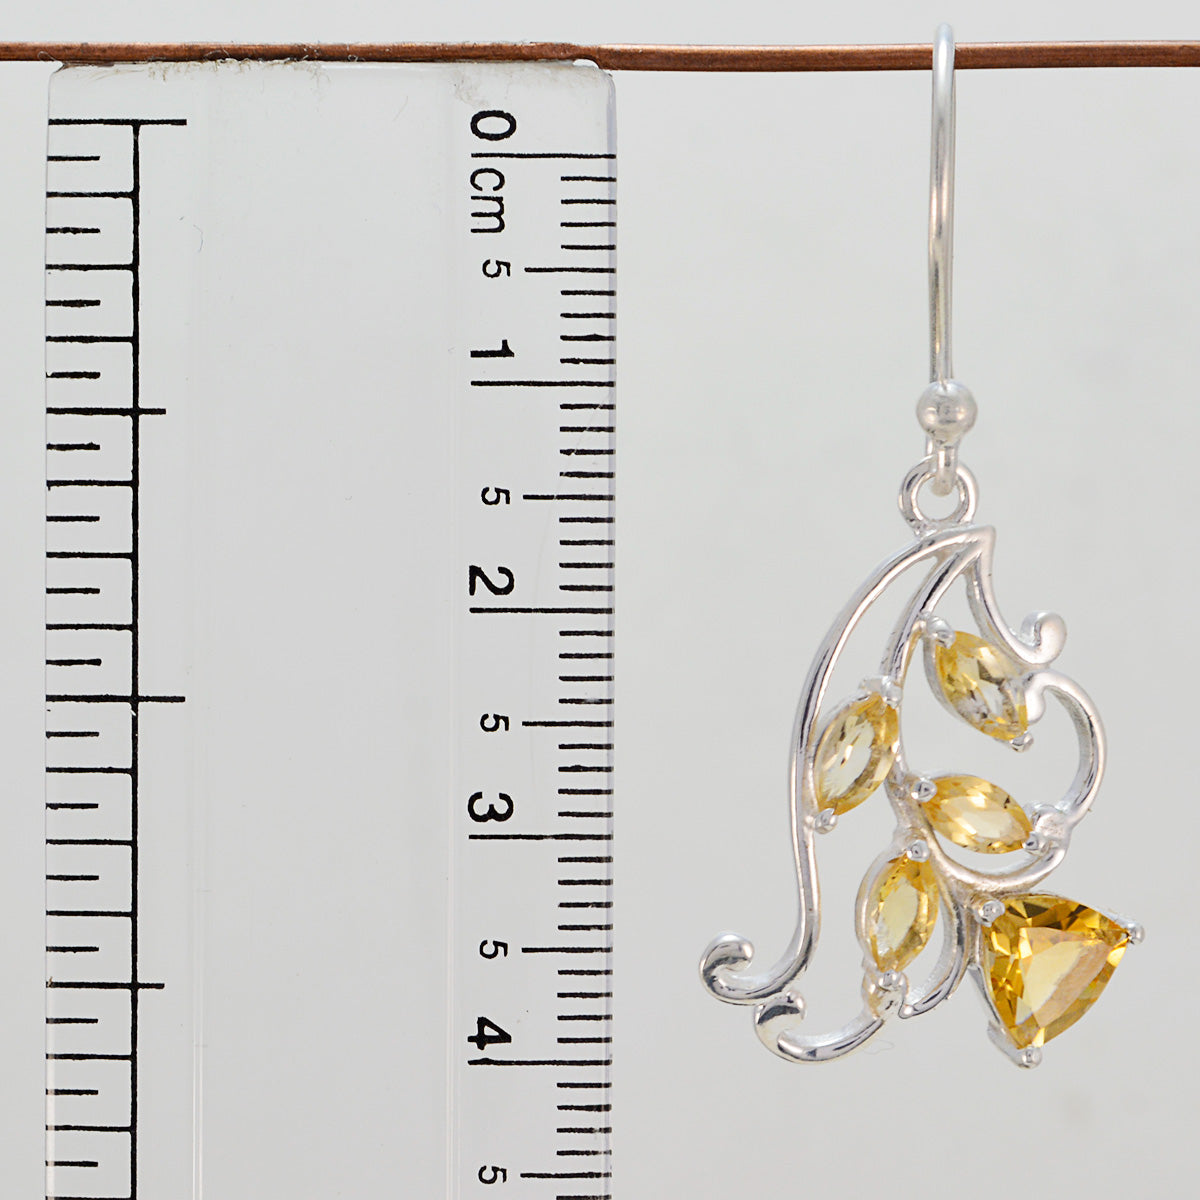 Riyo Genuine Gems multi shape Faceted Yellow Citrine Silver Earring gift for handmade